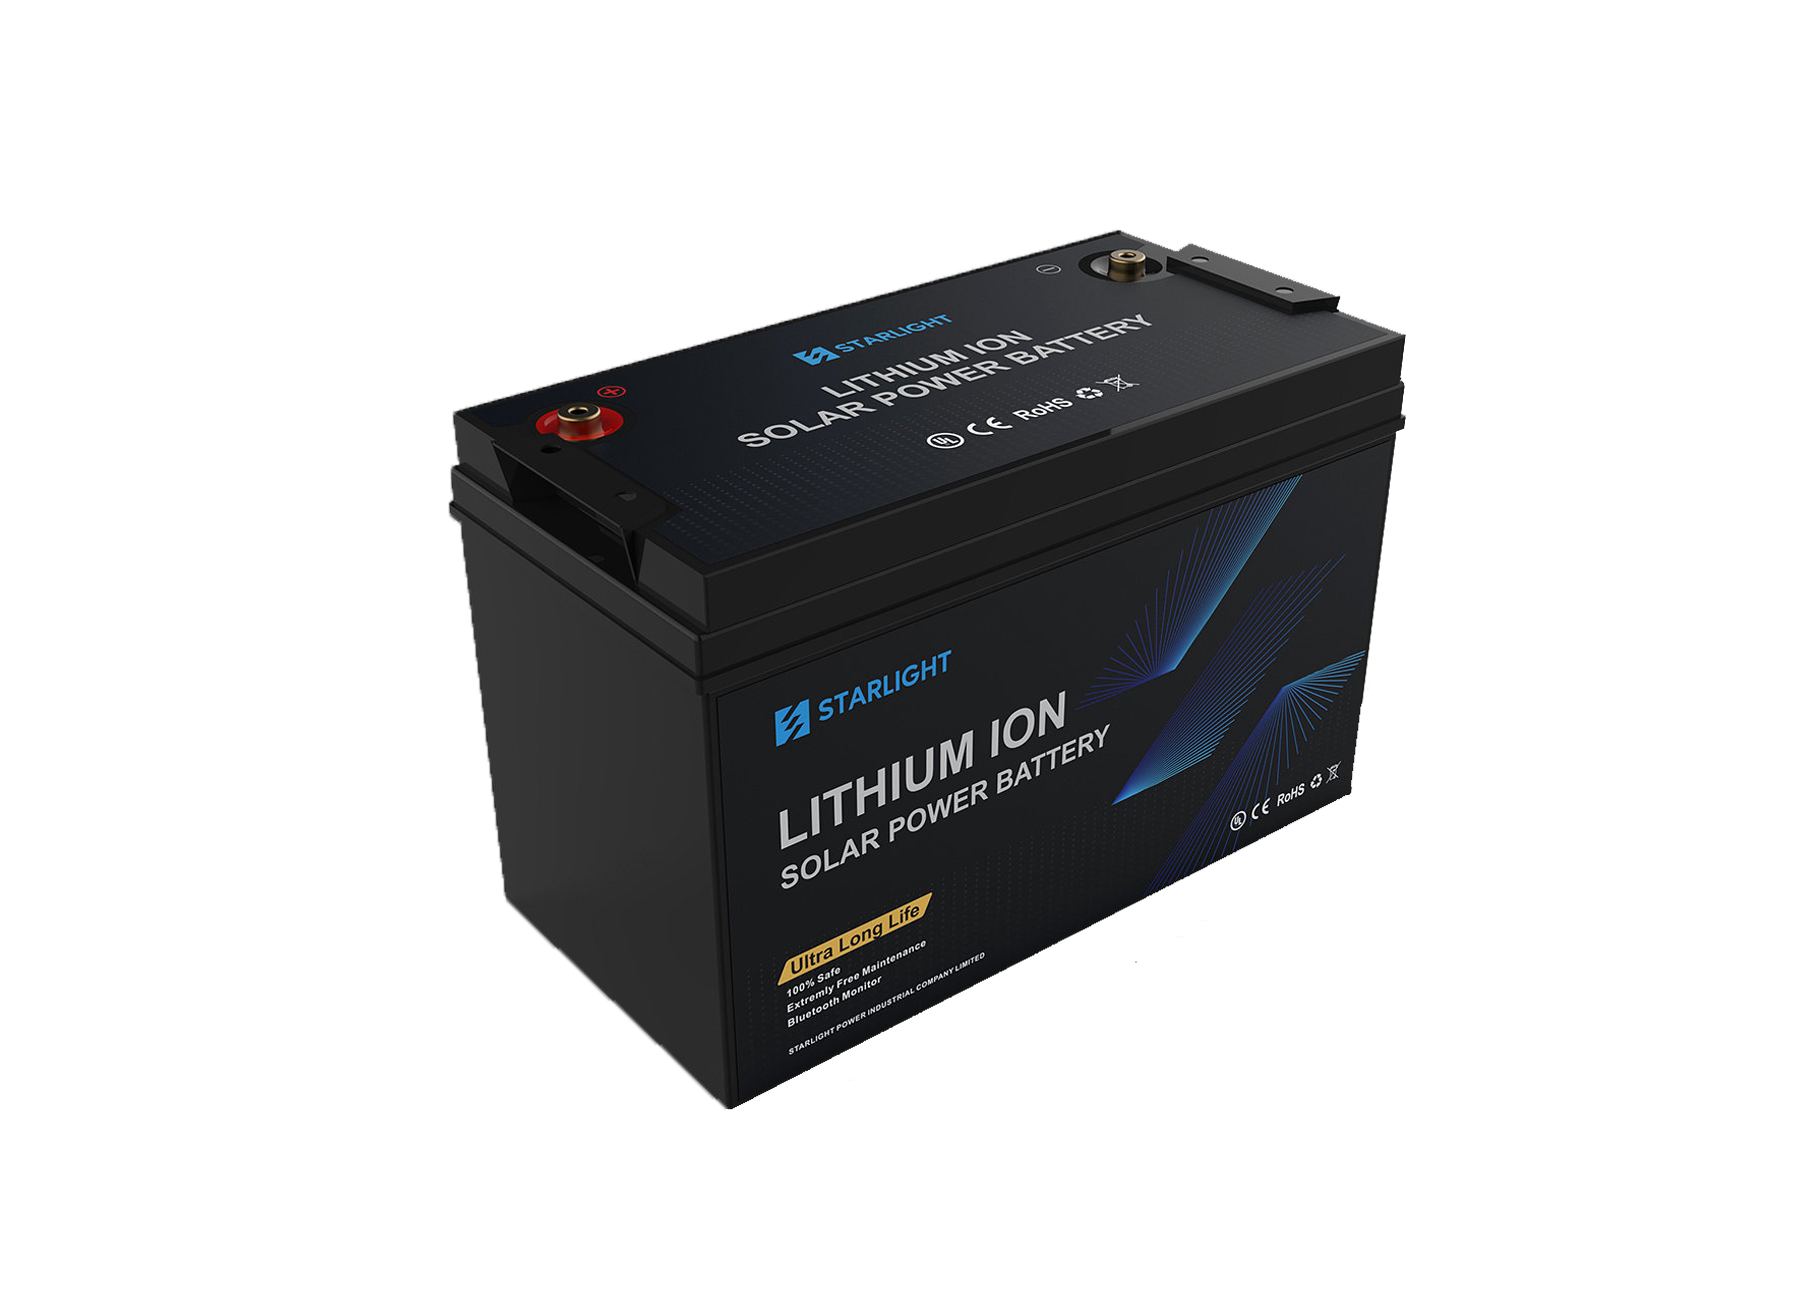 12.80V / 12V 200Ah LiFePO4 Lithium Battery